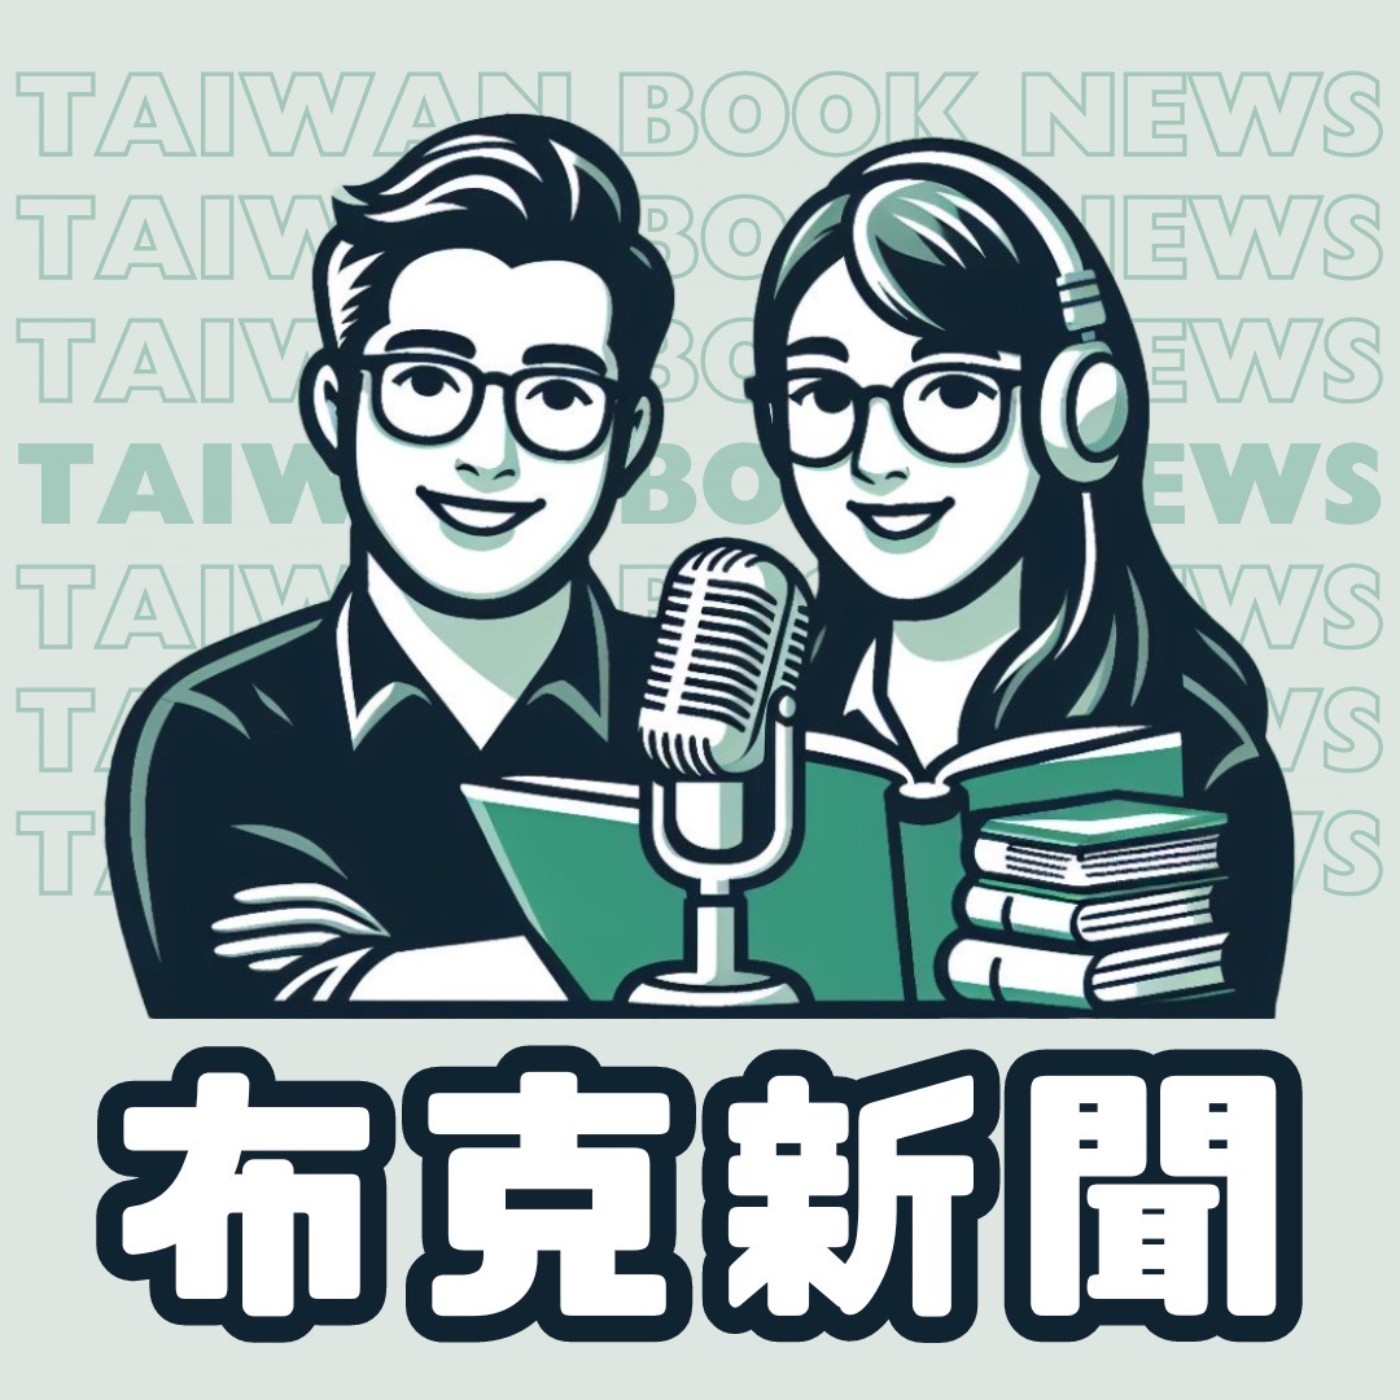 布克新聞 Taiwan Book News S5EP09：阿共打來前先積極行動吧！ft. 沃草《積極行動指南》主編蕭長展